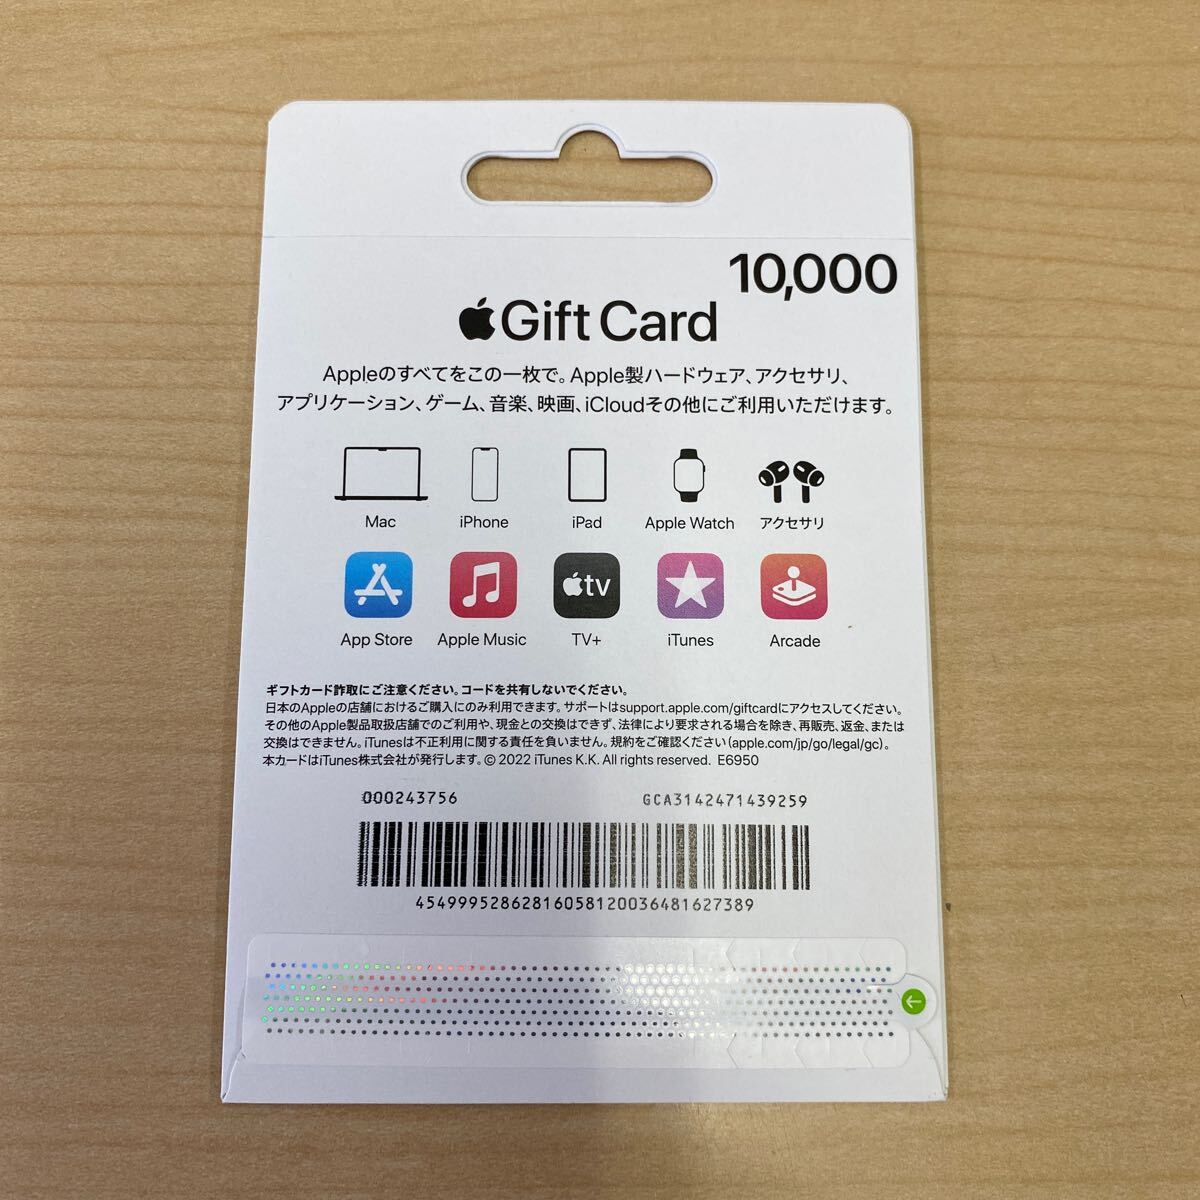 【TF0324】 未使用 Apple Gift Card アップル ギフトカード 10000円分 iTunes App コード通知可能の画像2